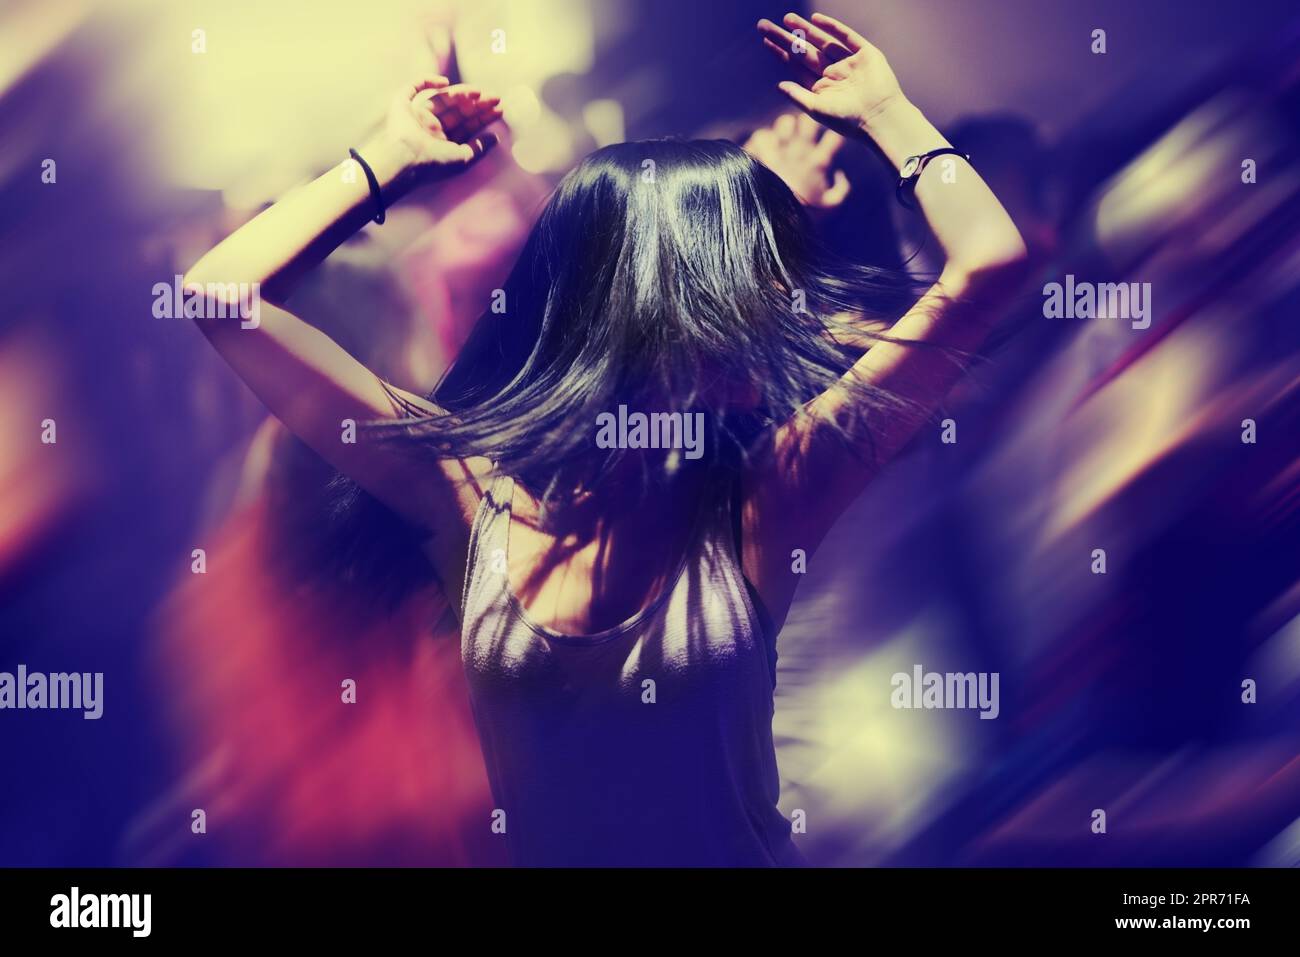 Dancing the night away. A young woman dancing. Stock Photo